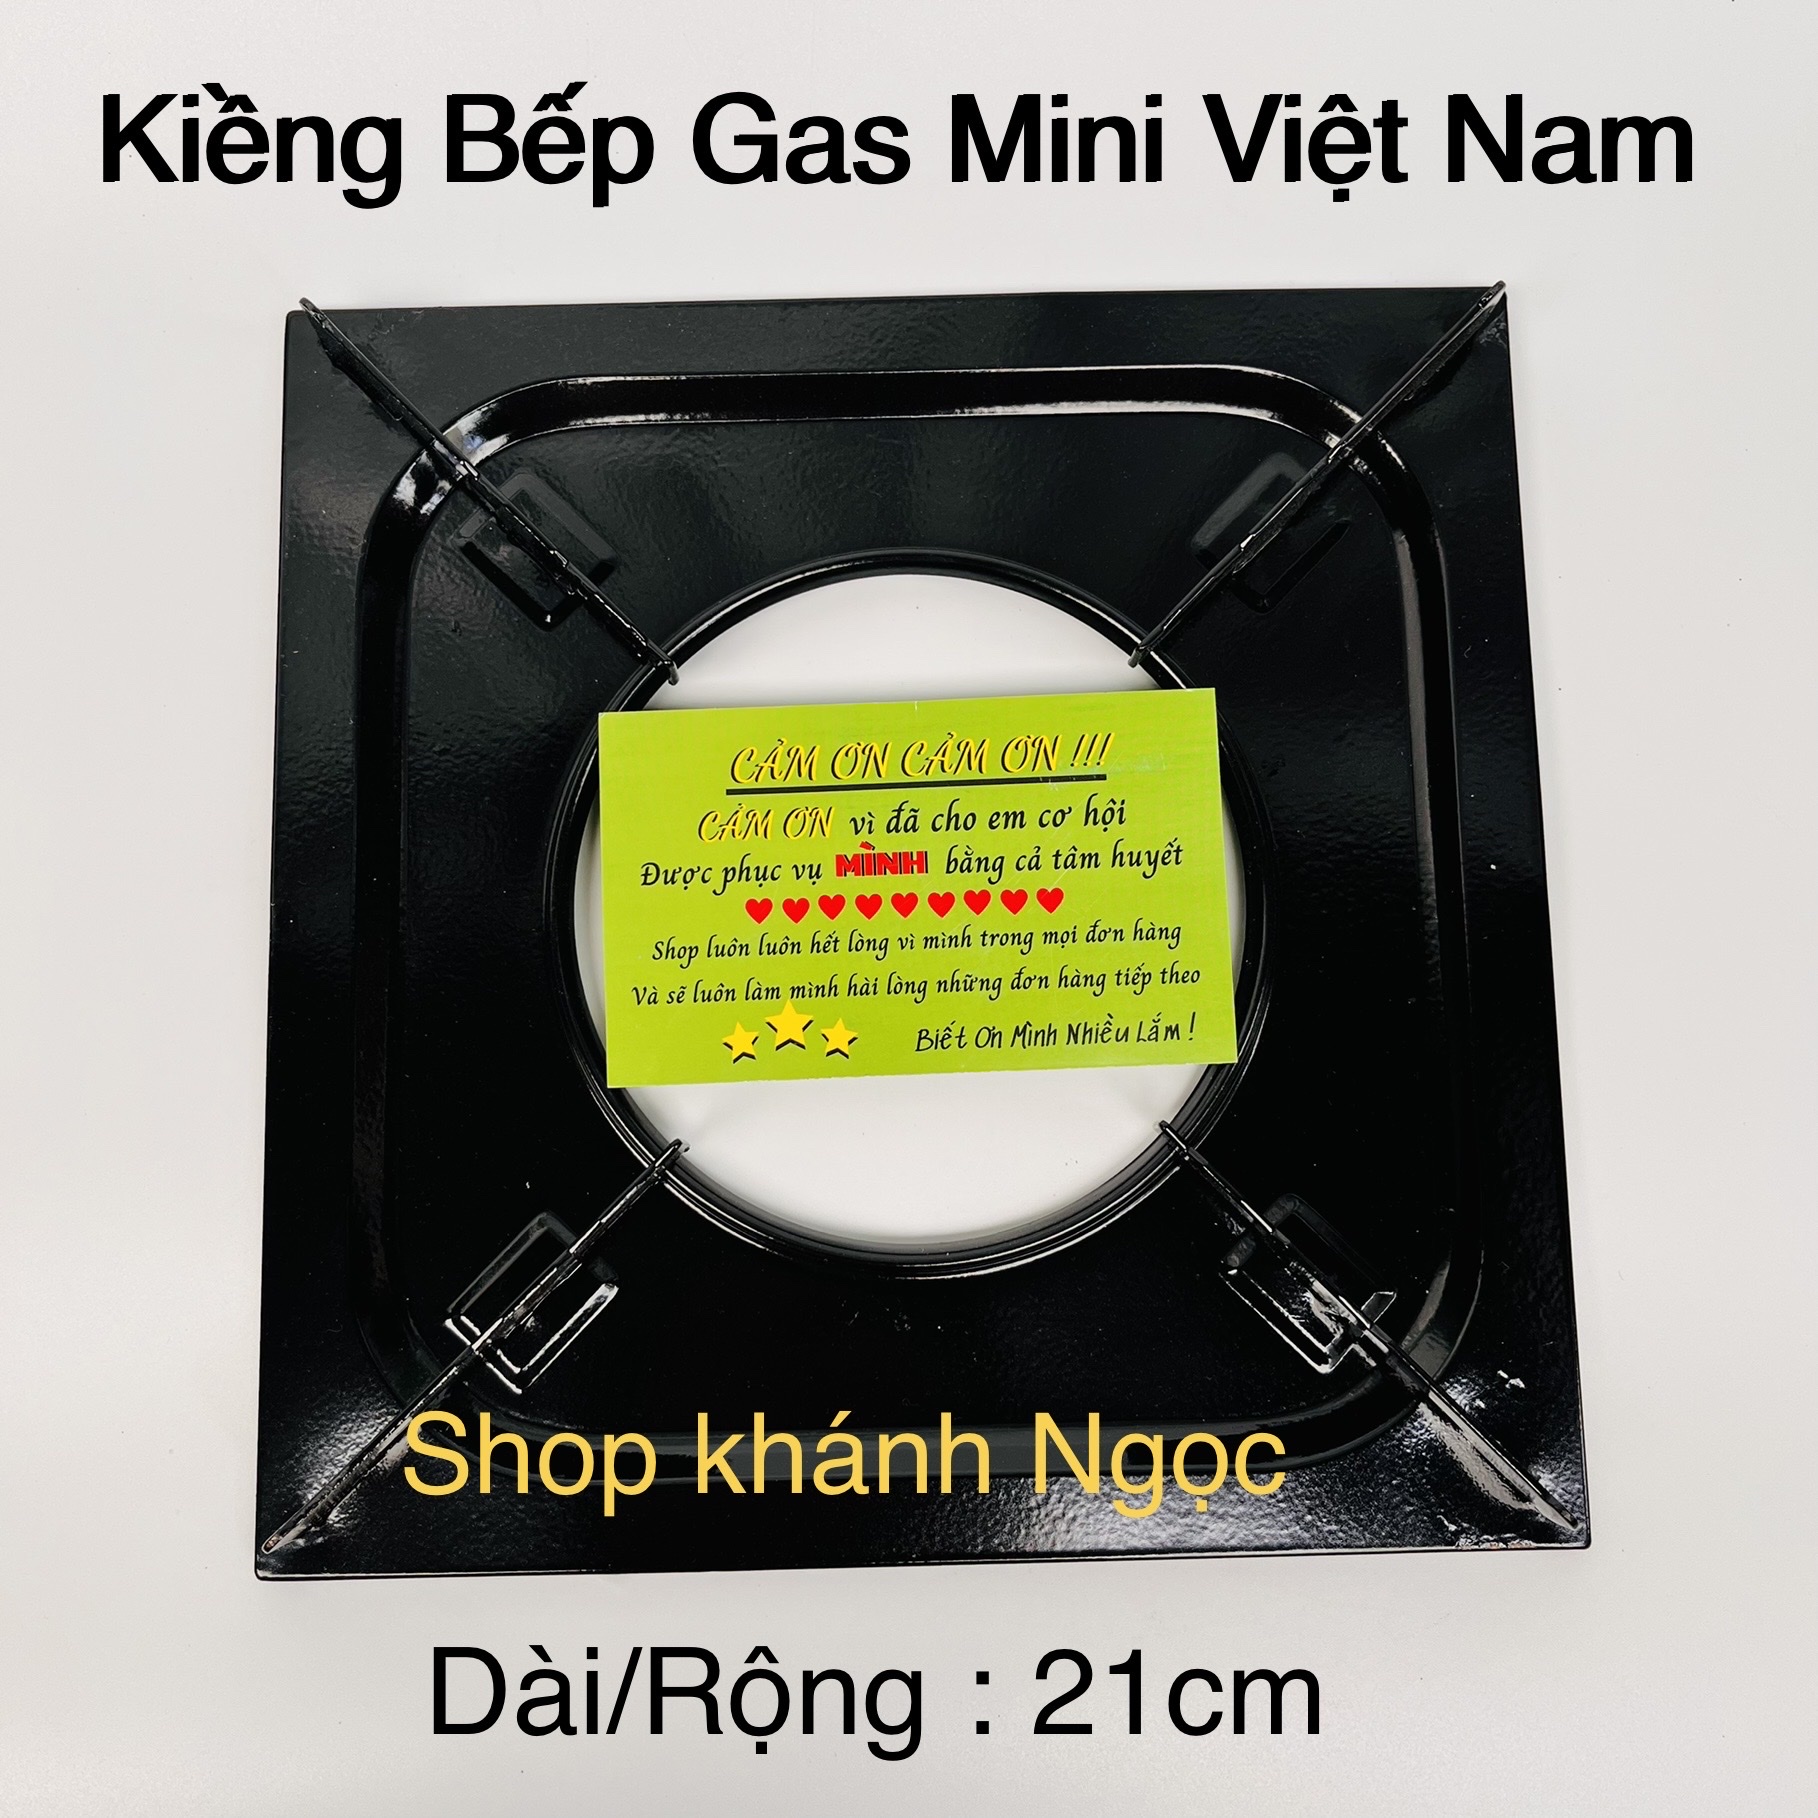 Kiềng bếp gas mini NAMILUX KT 25x23cm - Việt Nam KT 21X21cm - Kiềng bếp ga du lịch loại thông dụng